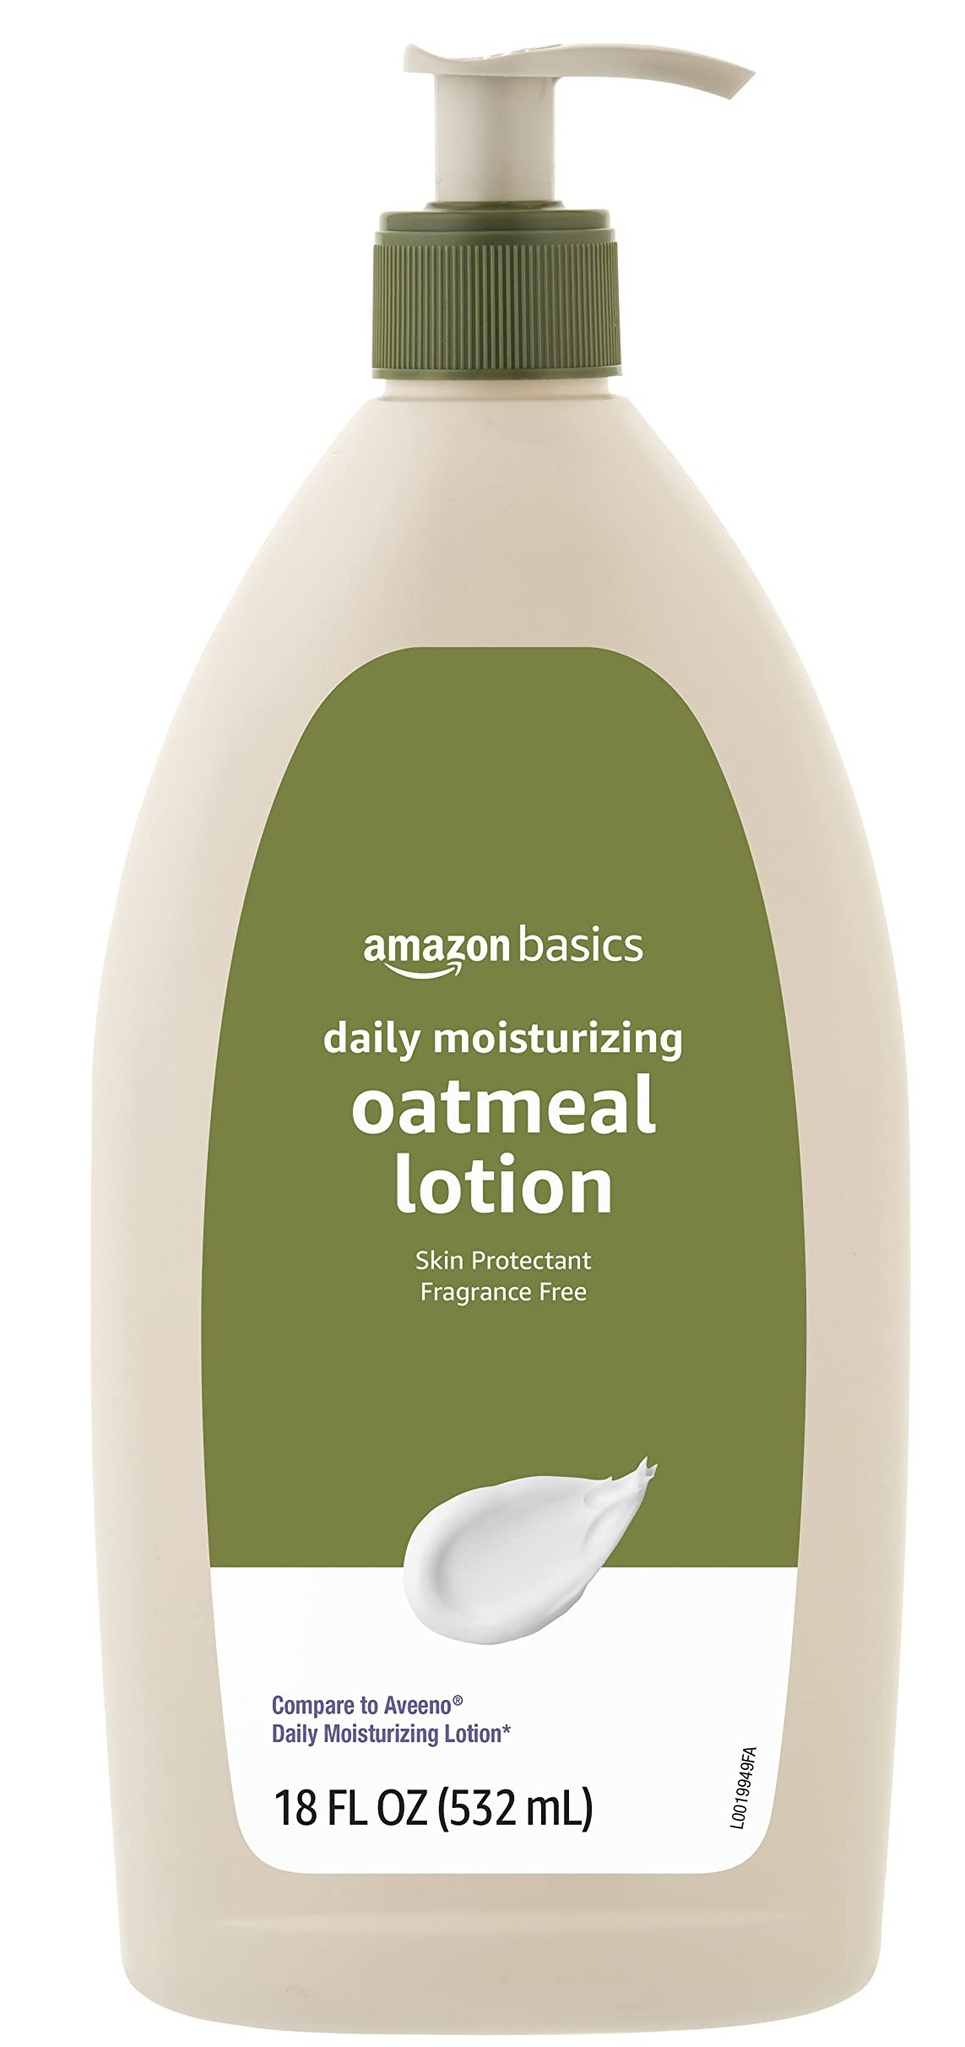 Amazon Basics Daily Moisturizing Oatmeal Body Lotion And Skin Protectant